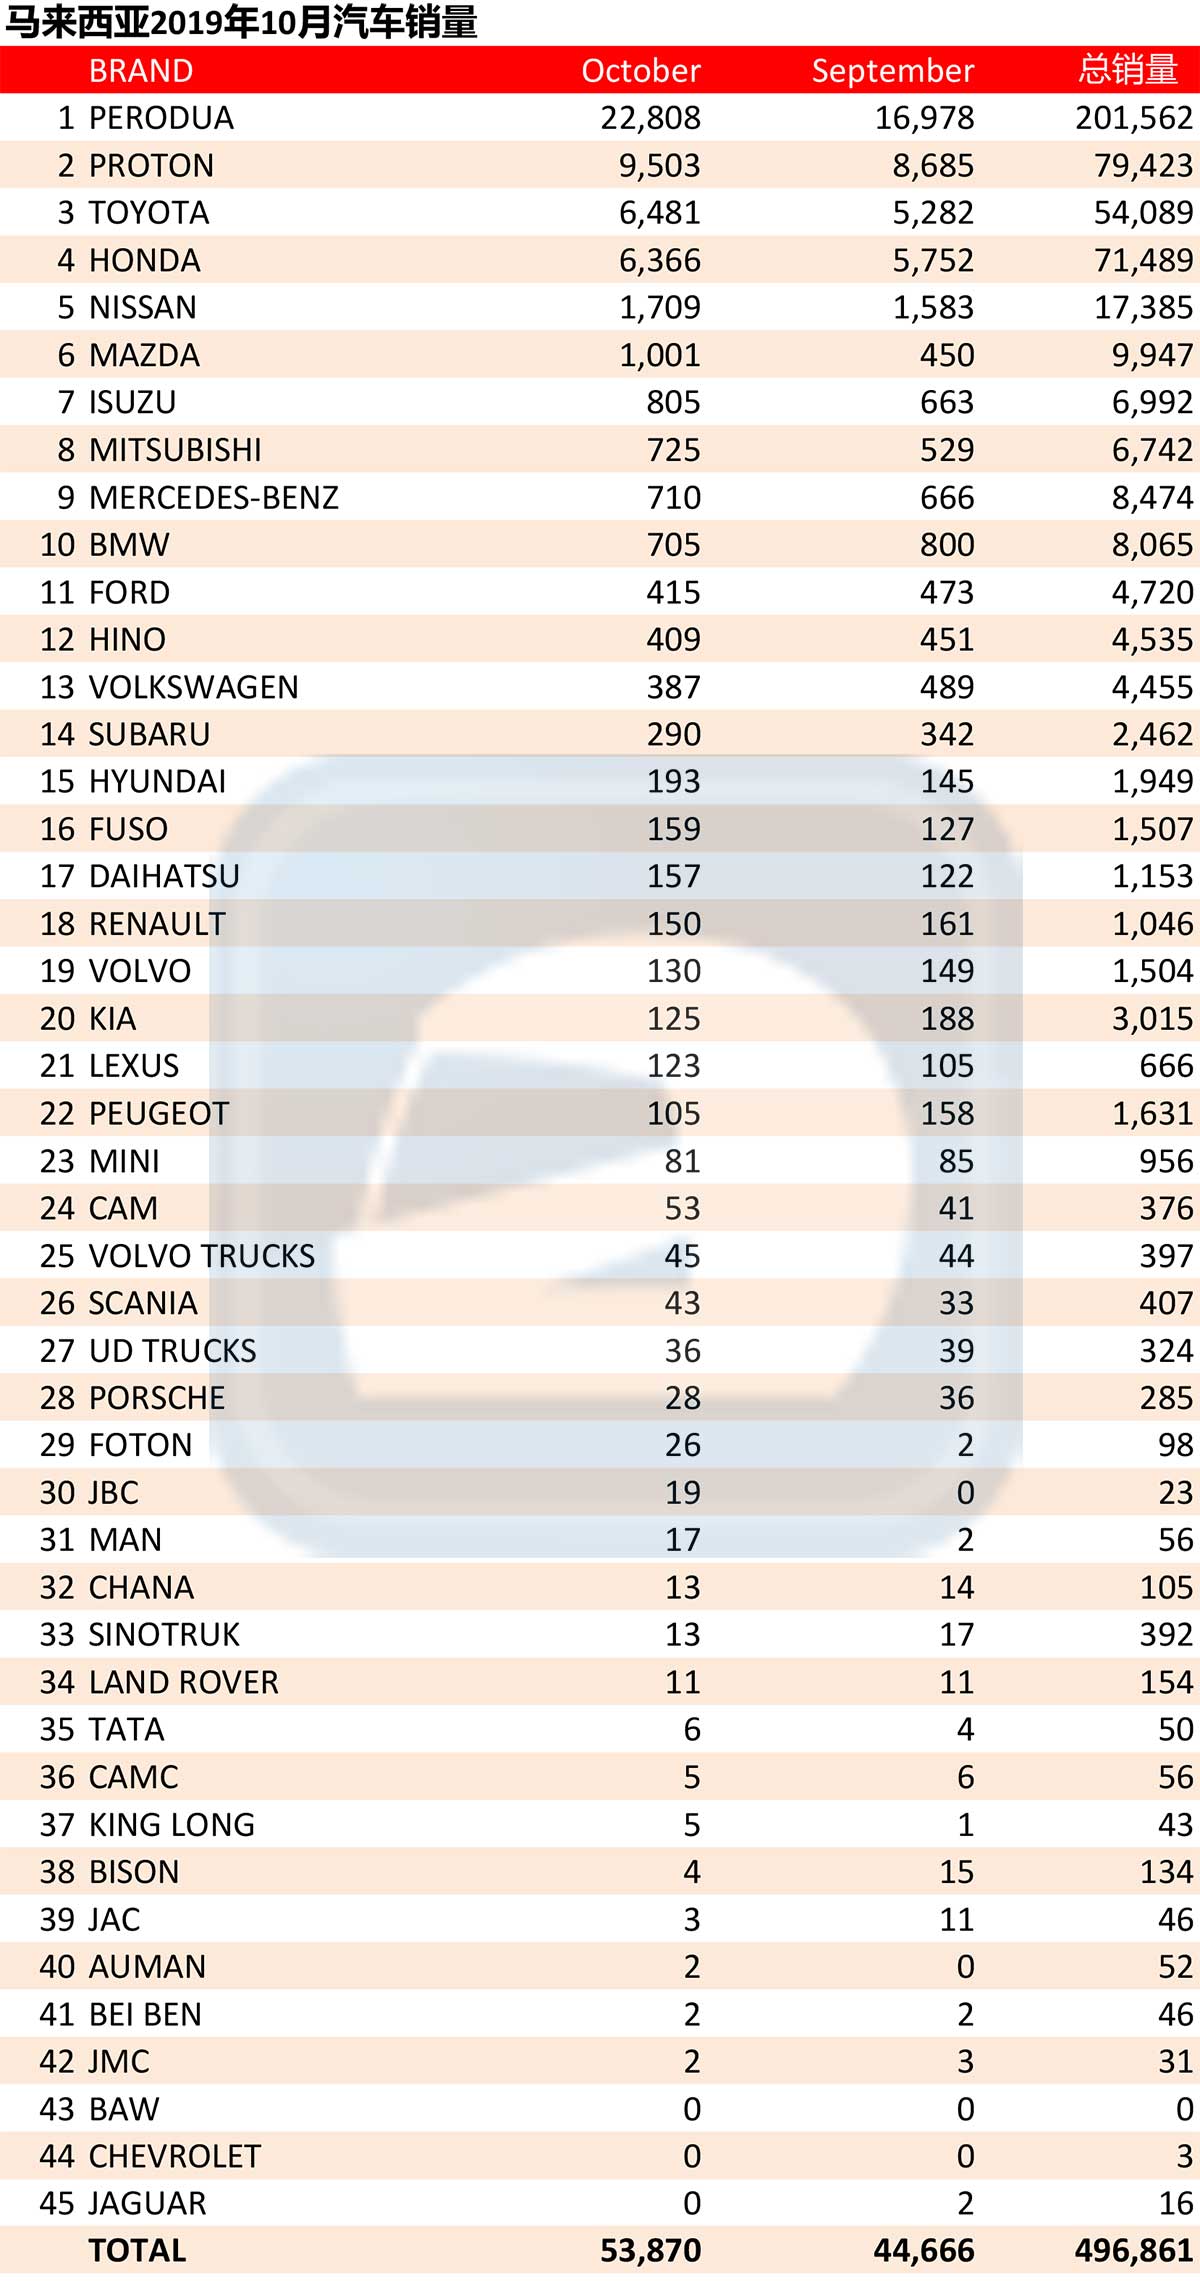 2019年10月大马汽车销量： Perodua 总销量冲破20万